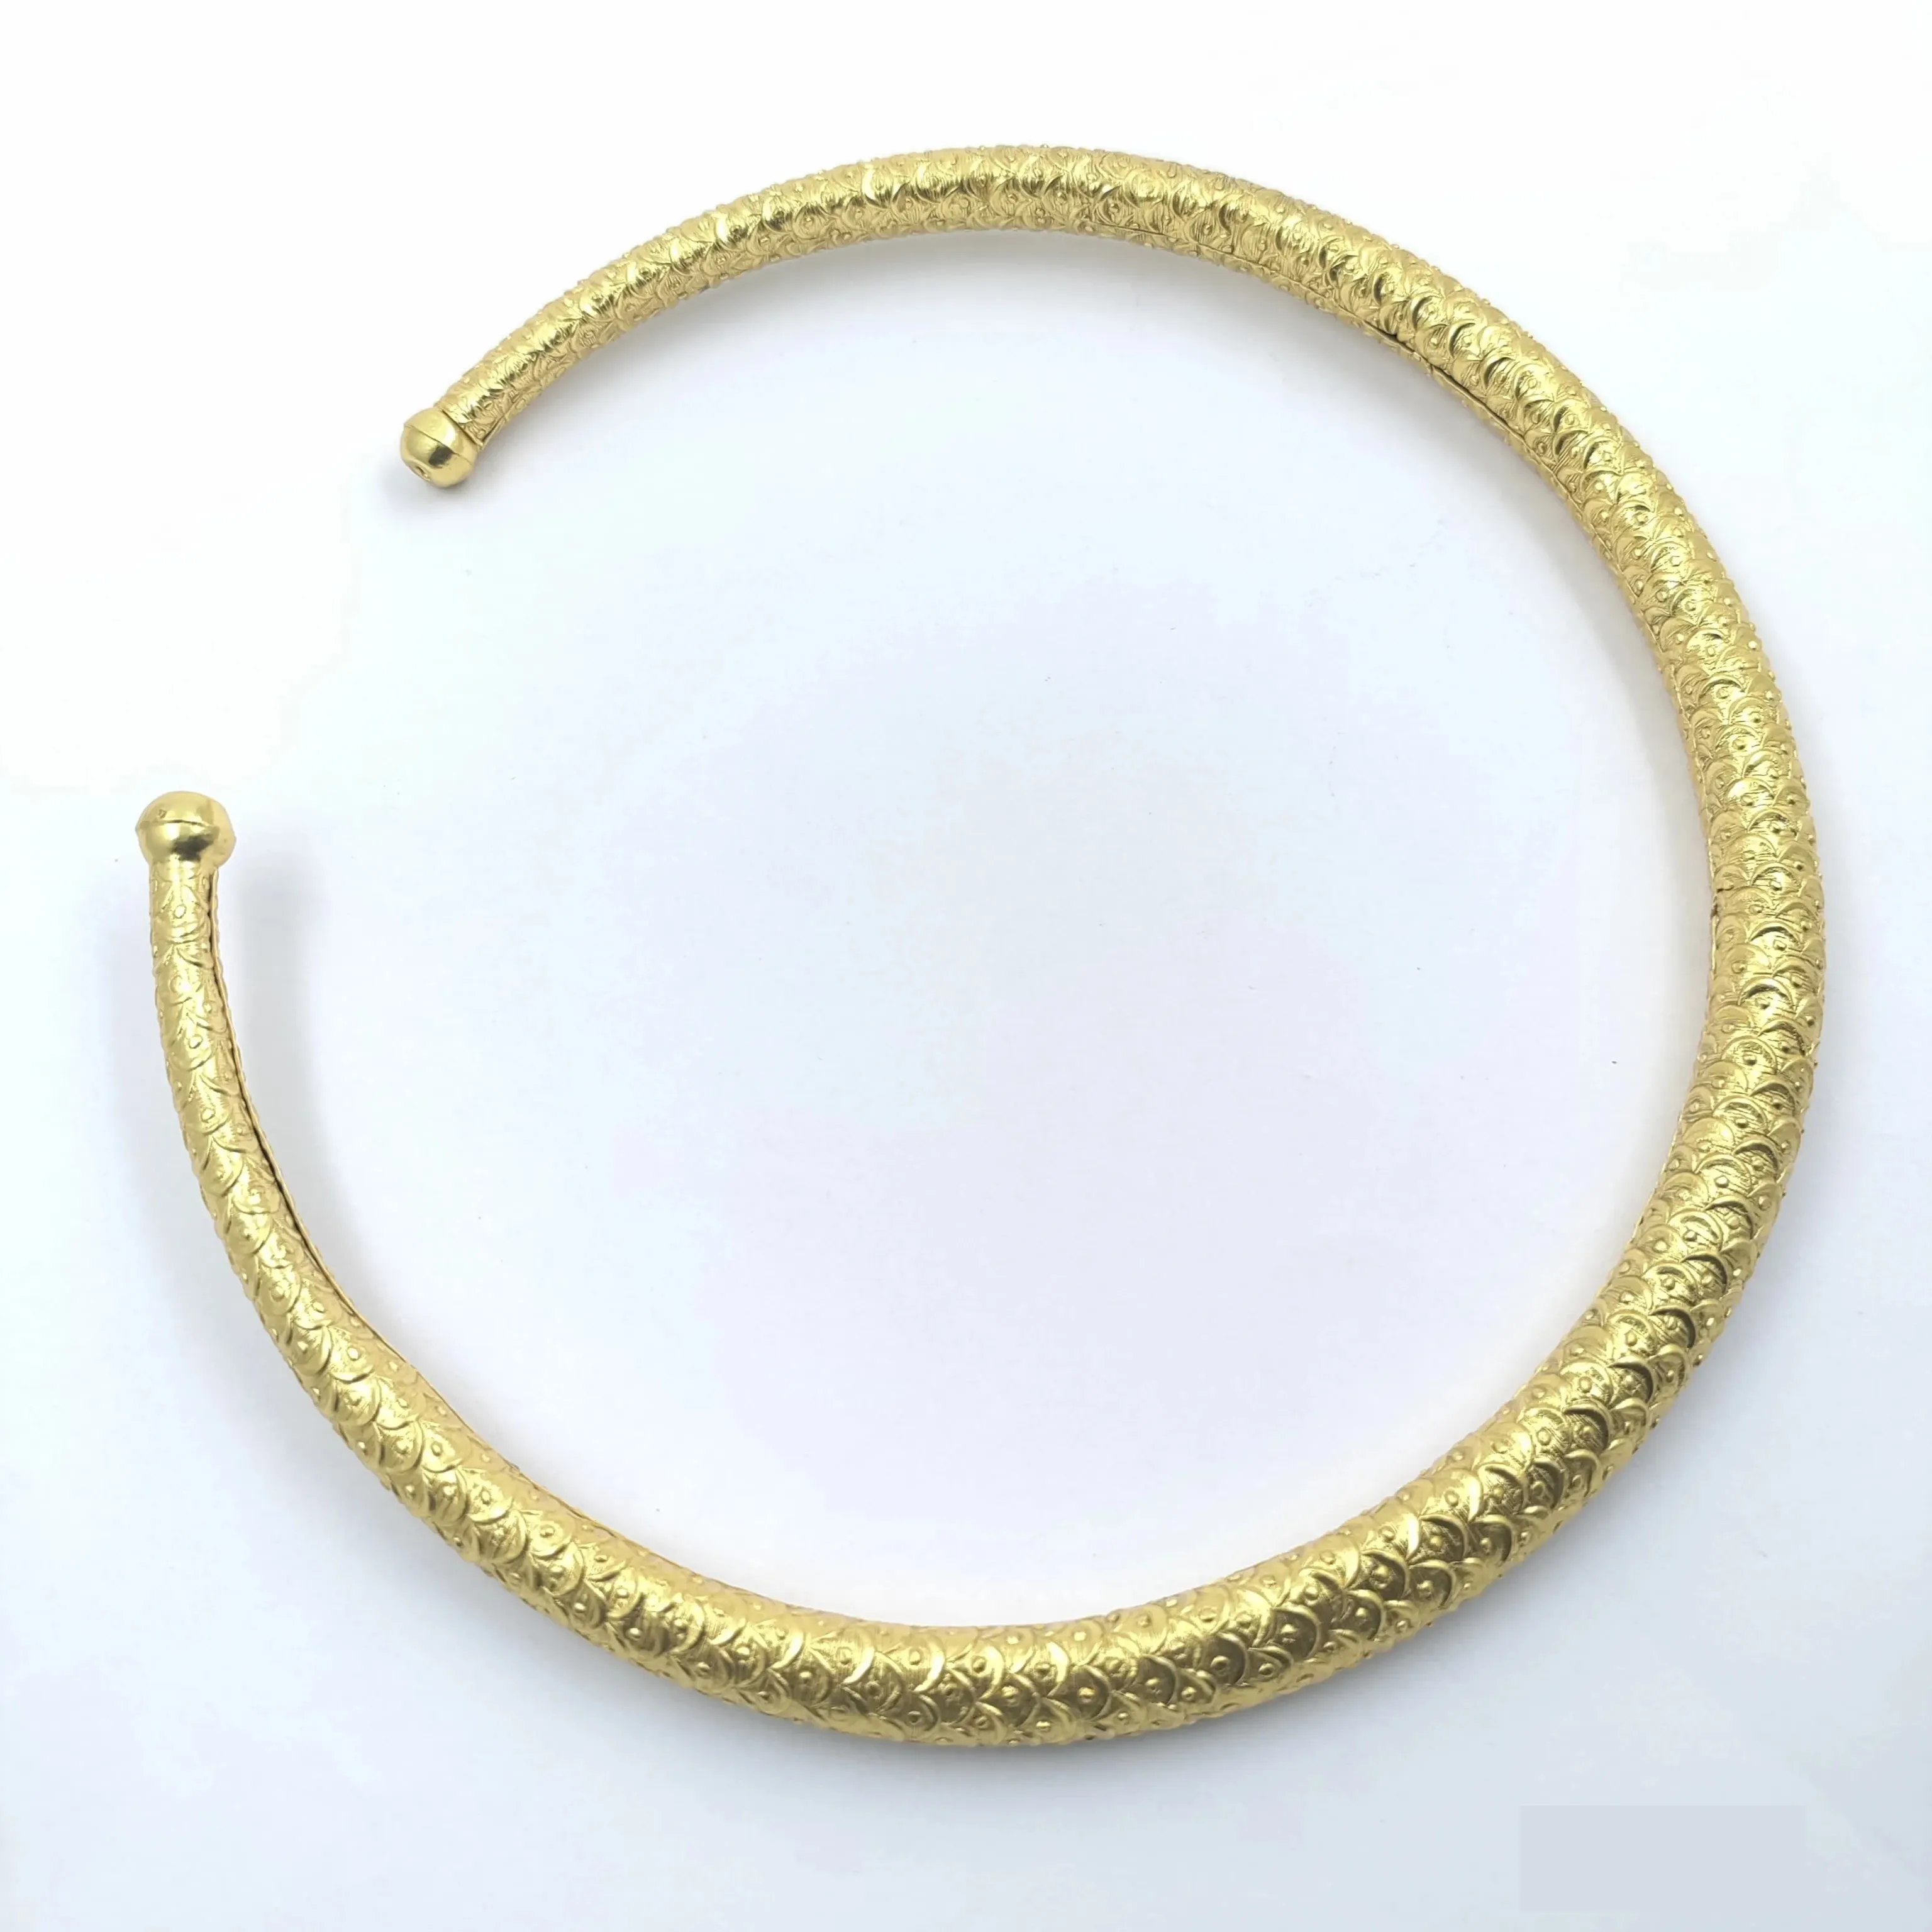 Direktlieferung ab Werk von modeschmuck neuestes Design Messing Hasli Choker-Halsband zu einem günstigen Preis kaufen